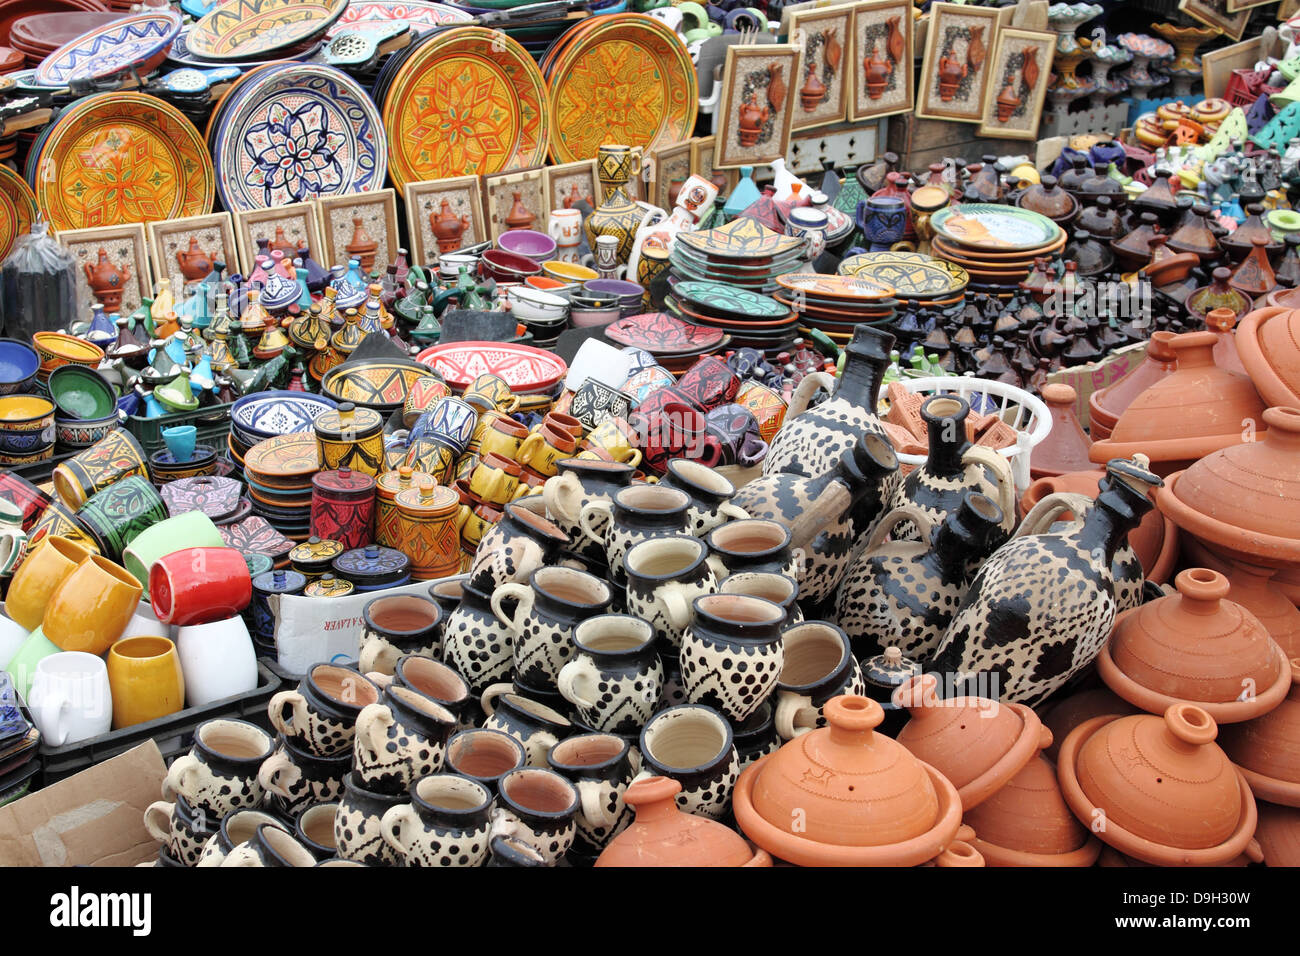 La poterie traditionnelle marocaine en vente dans une échoppe de marché Banque D'Images